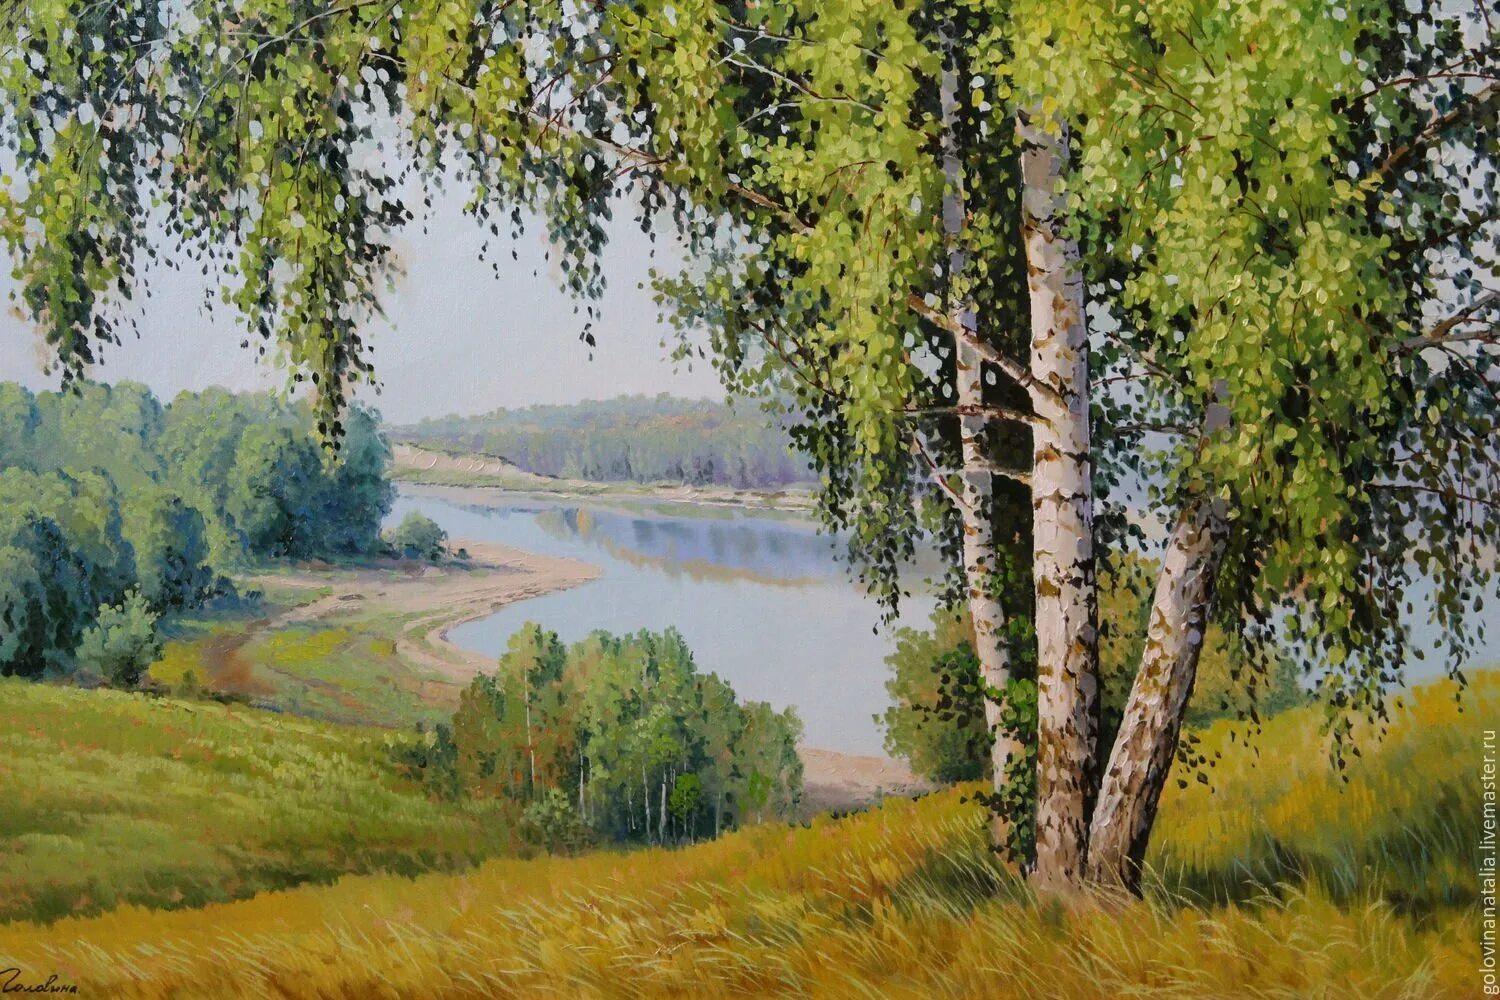 Задание 2 природа россии. Берёзовый лес в живописи Лукиянов.